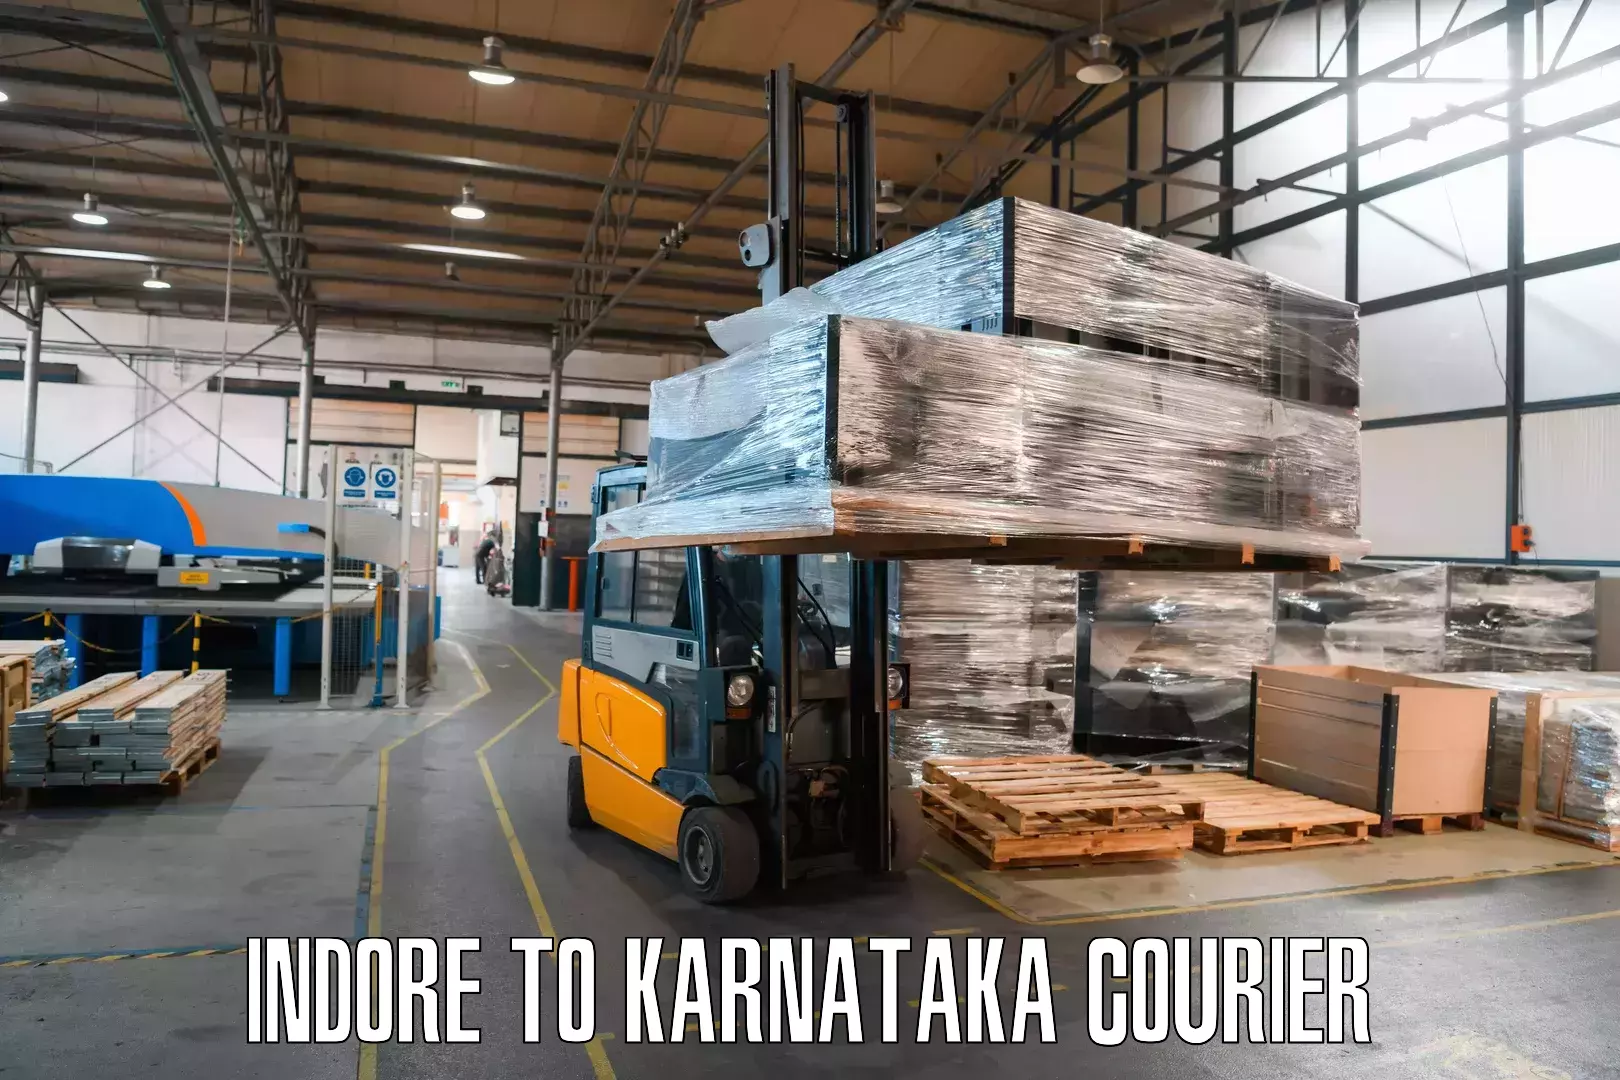 Tech-enabled shipping Indore to Yenepoya Mangalore